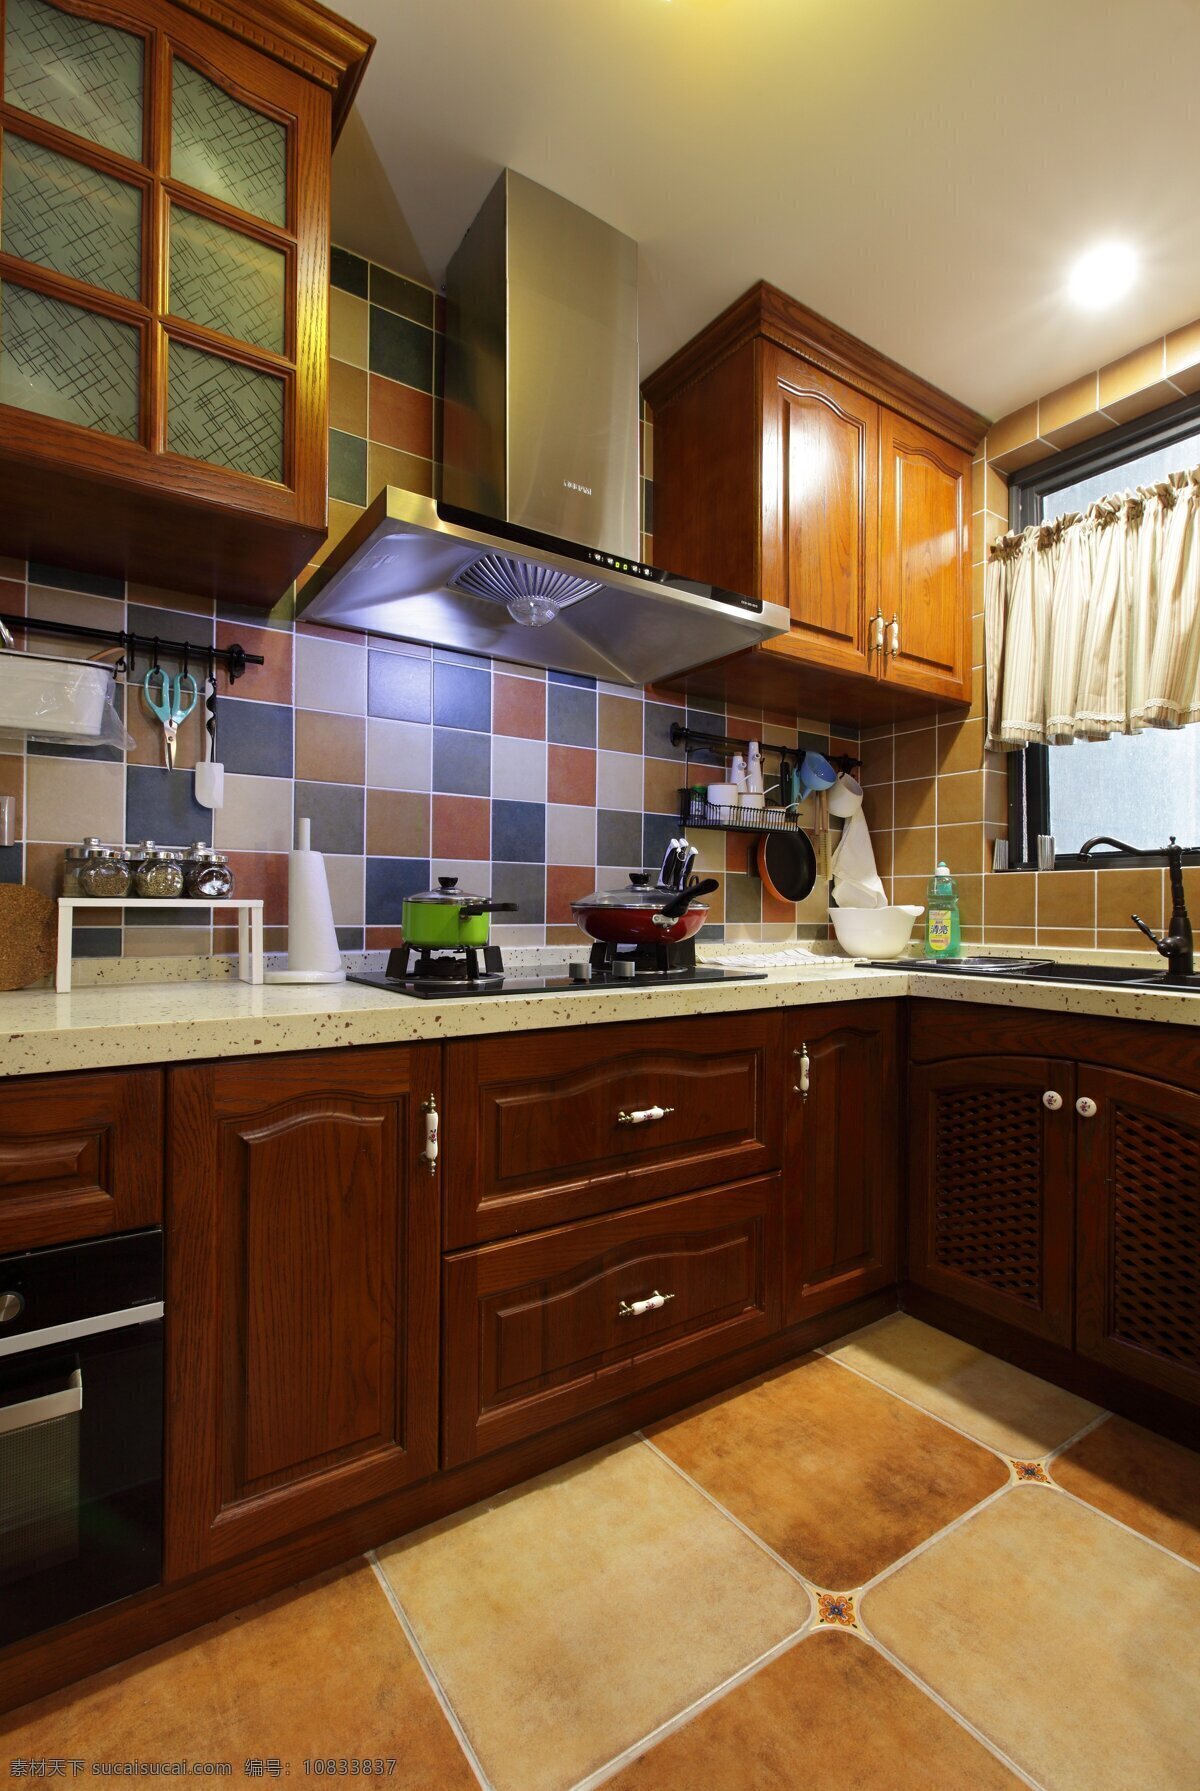 创意 厨房 橱柜 设计图 家居 家居生活 室内设计 装修 室内 家具 装修设计 环境设计 效果图